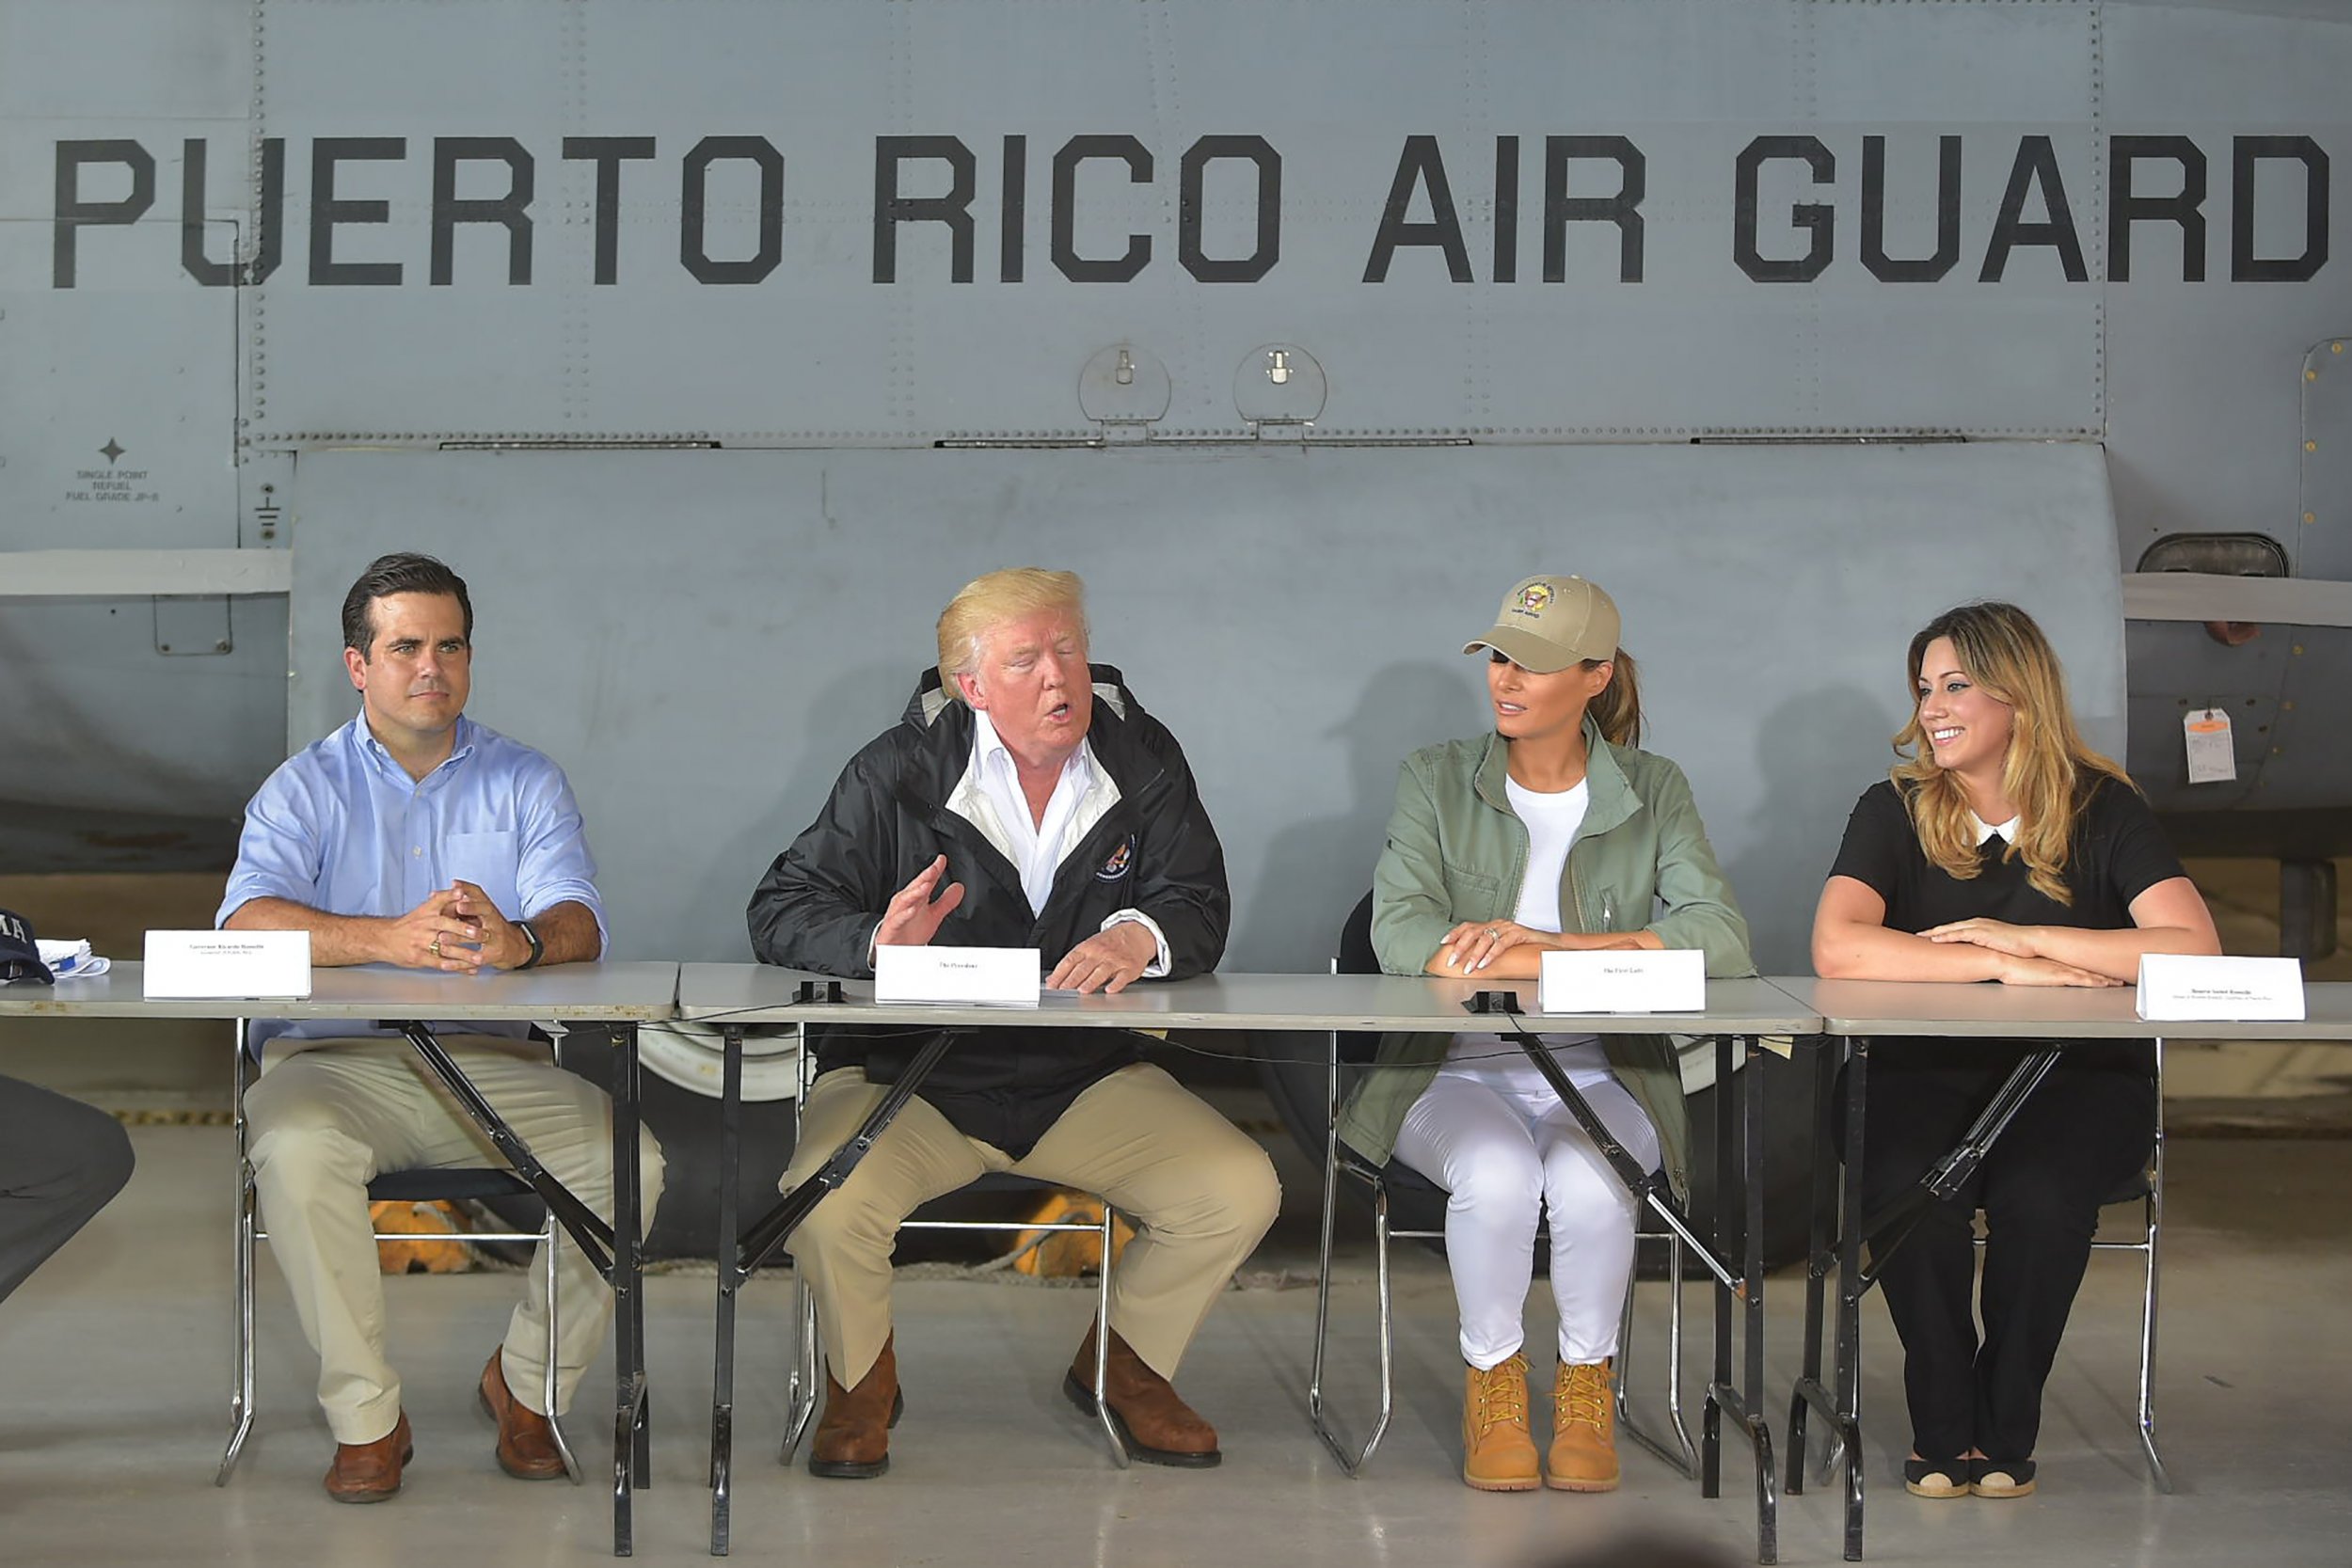 Trump Puerto rico